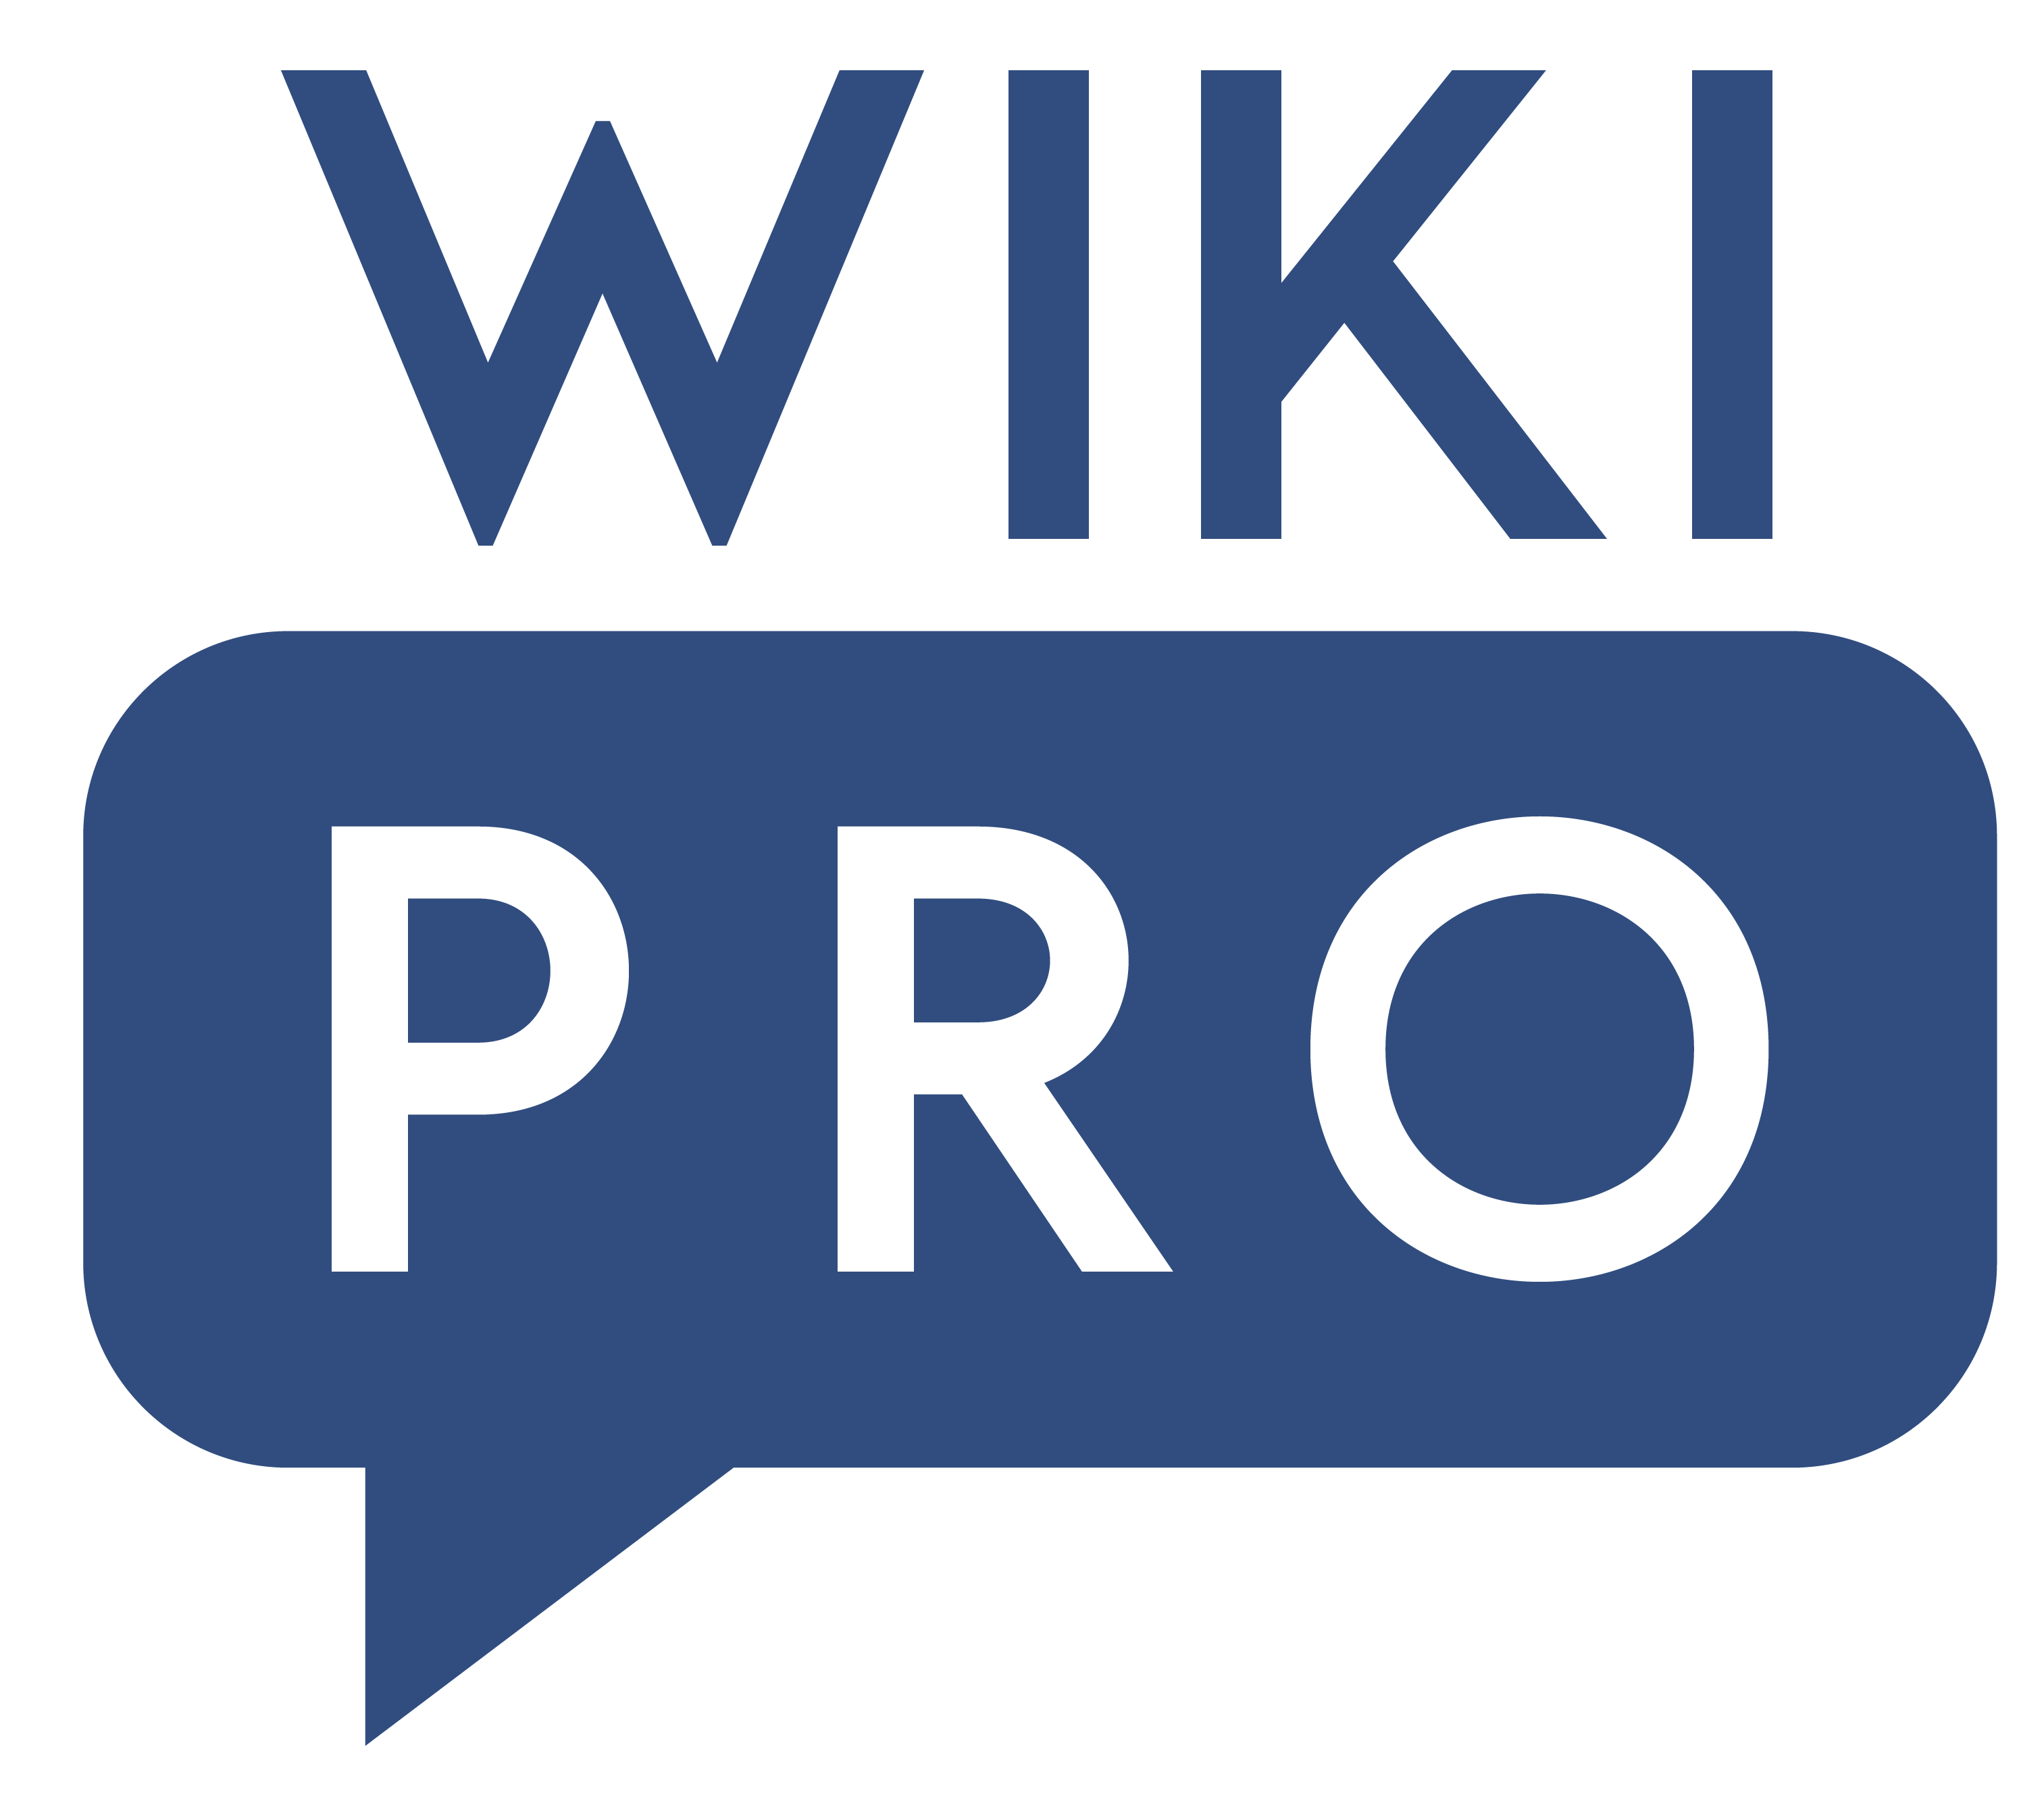 Wikipro